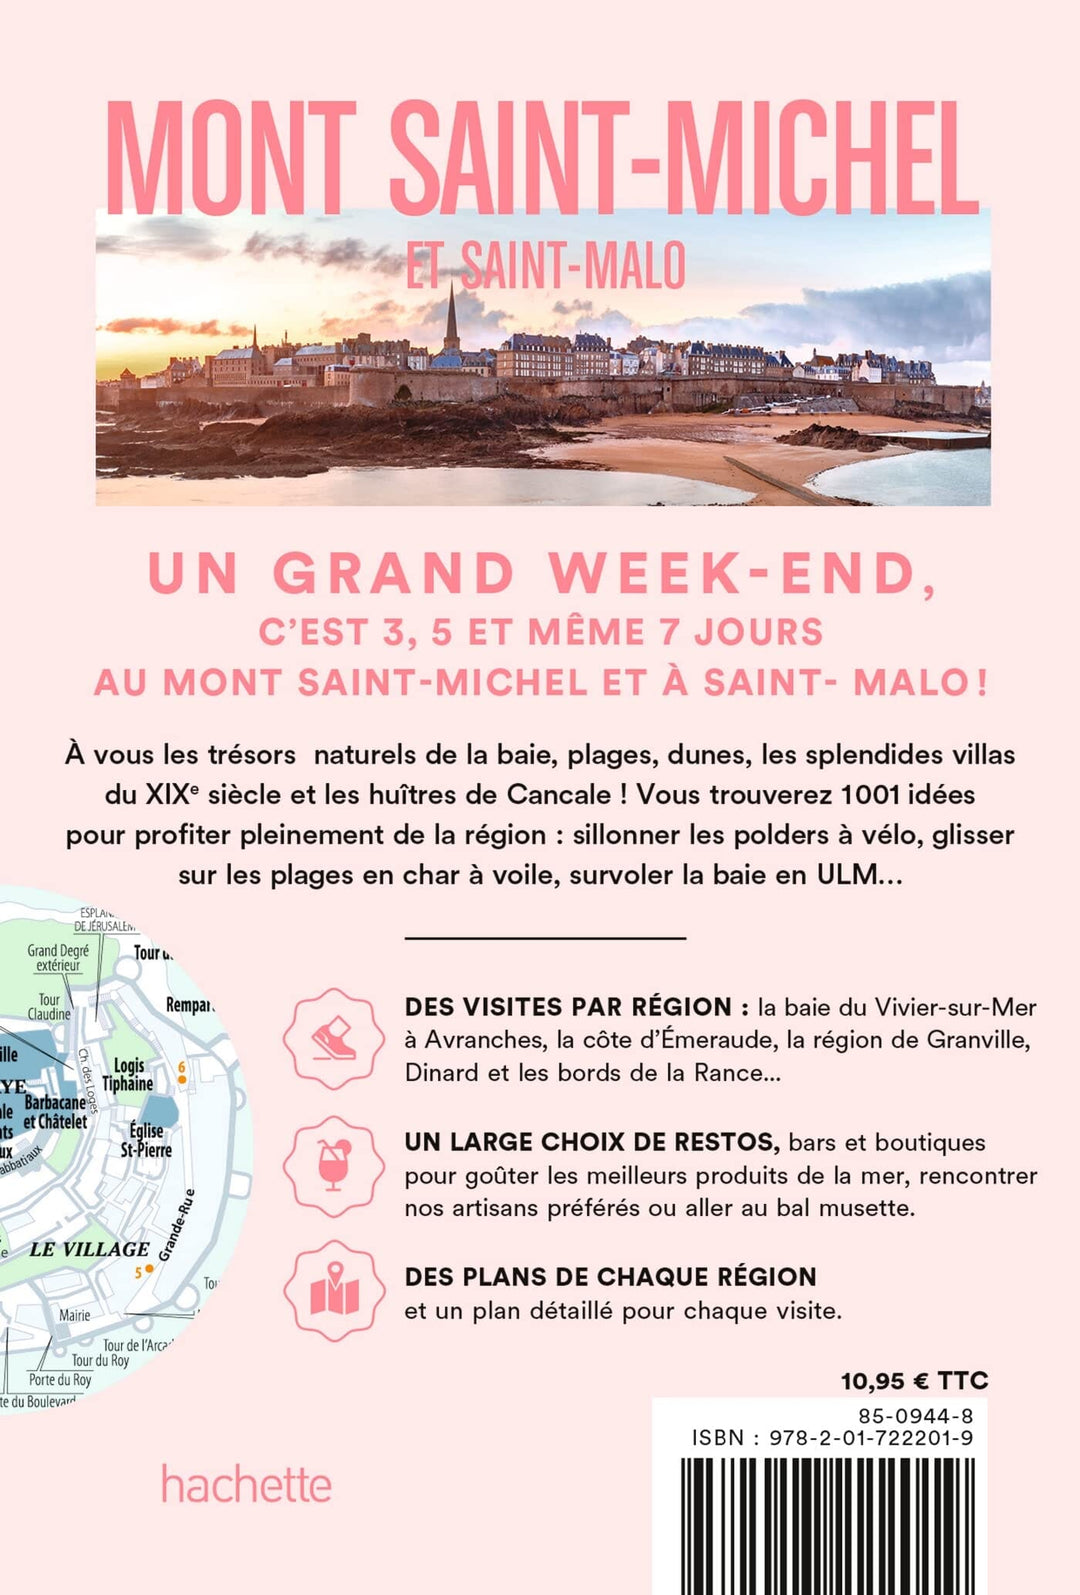 Guide de voyage de poche - Un Grand Week-end au Mont Saint-Michel & Saint Malo - Édition 2023 | Hachette guide petit format Hachette 